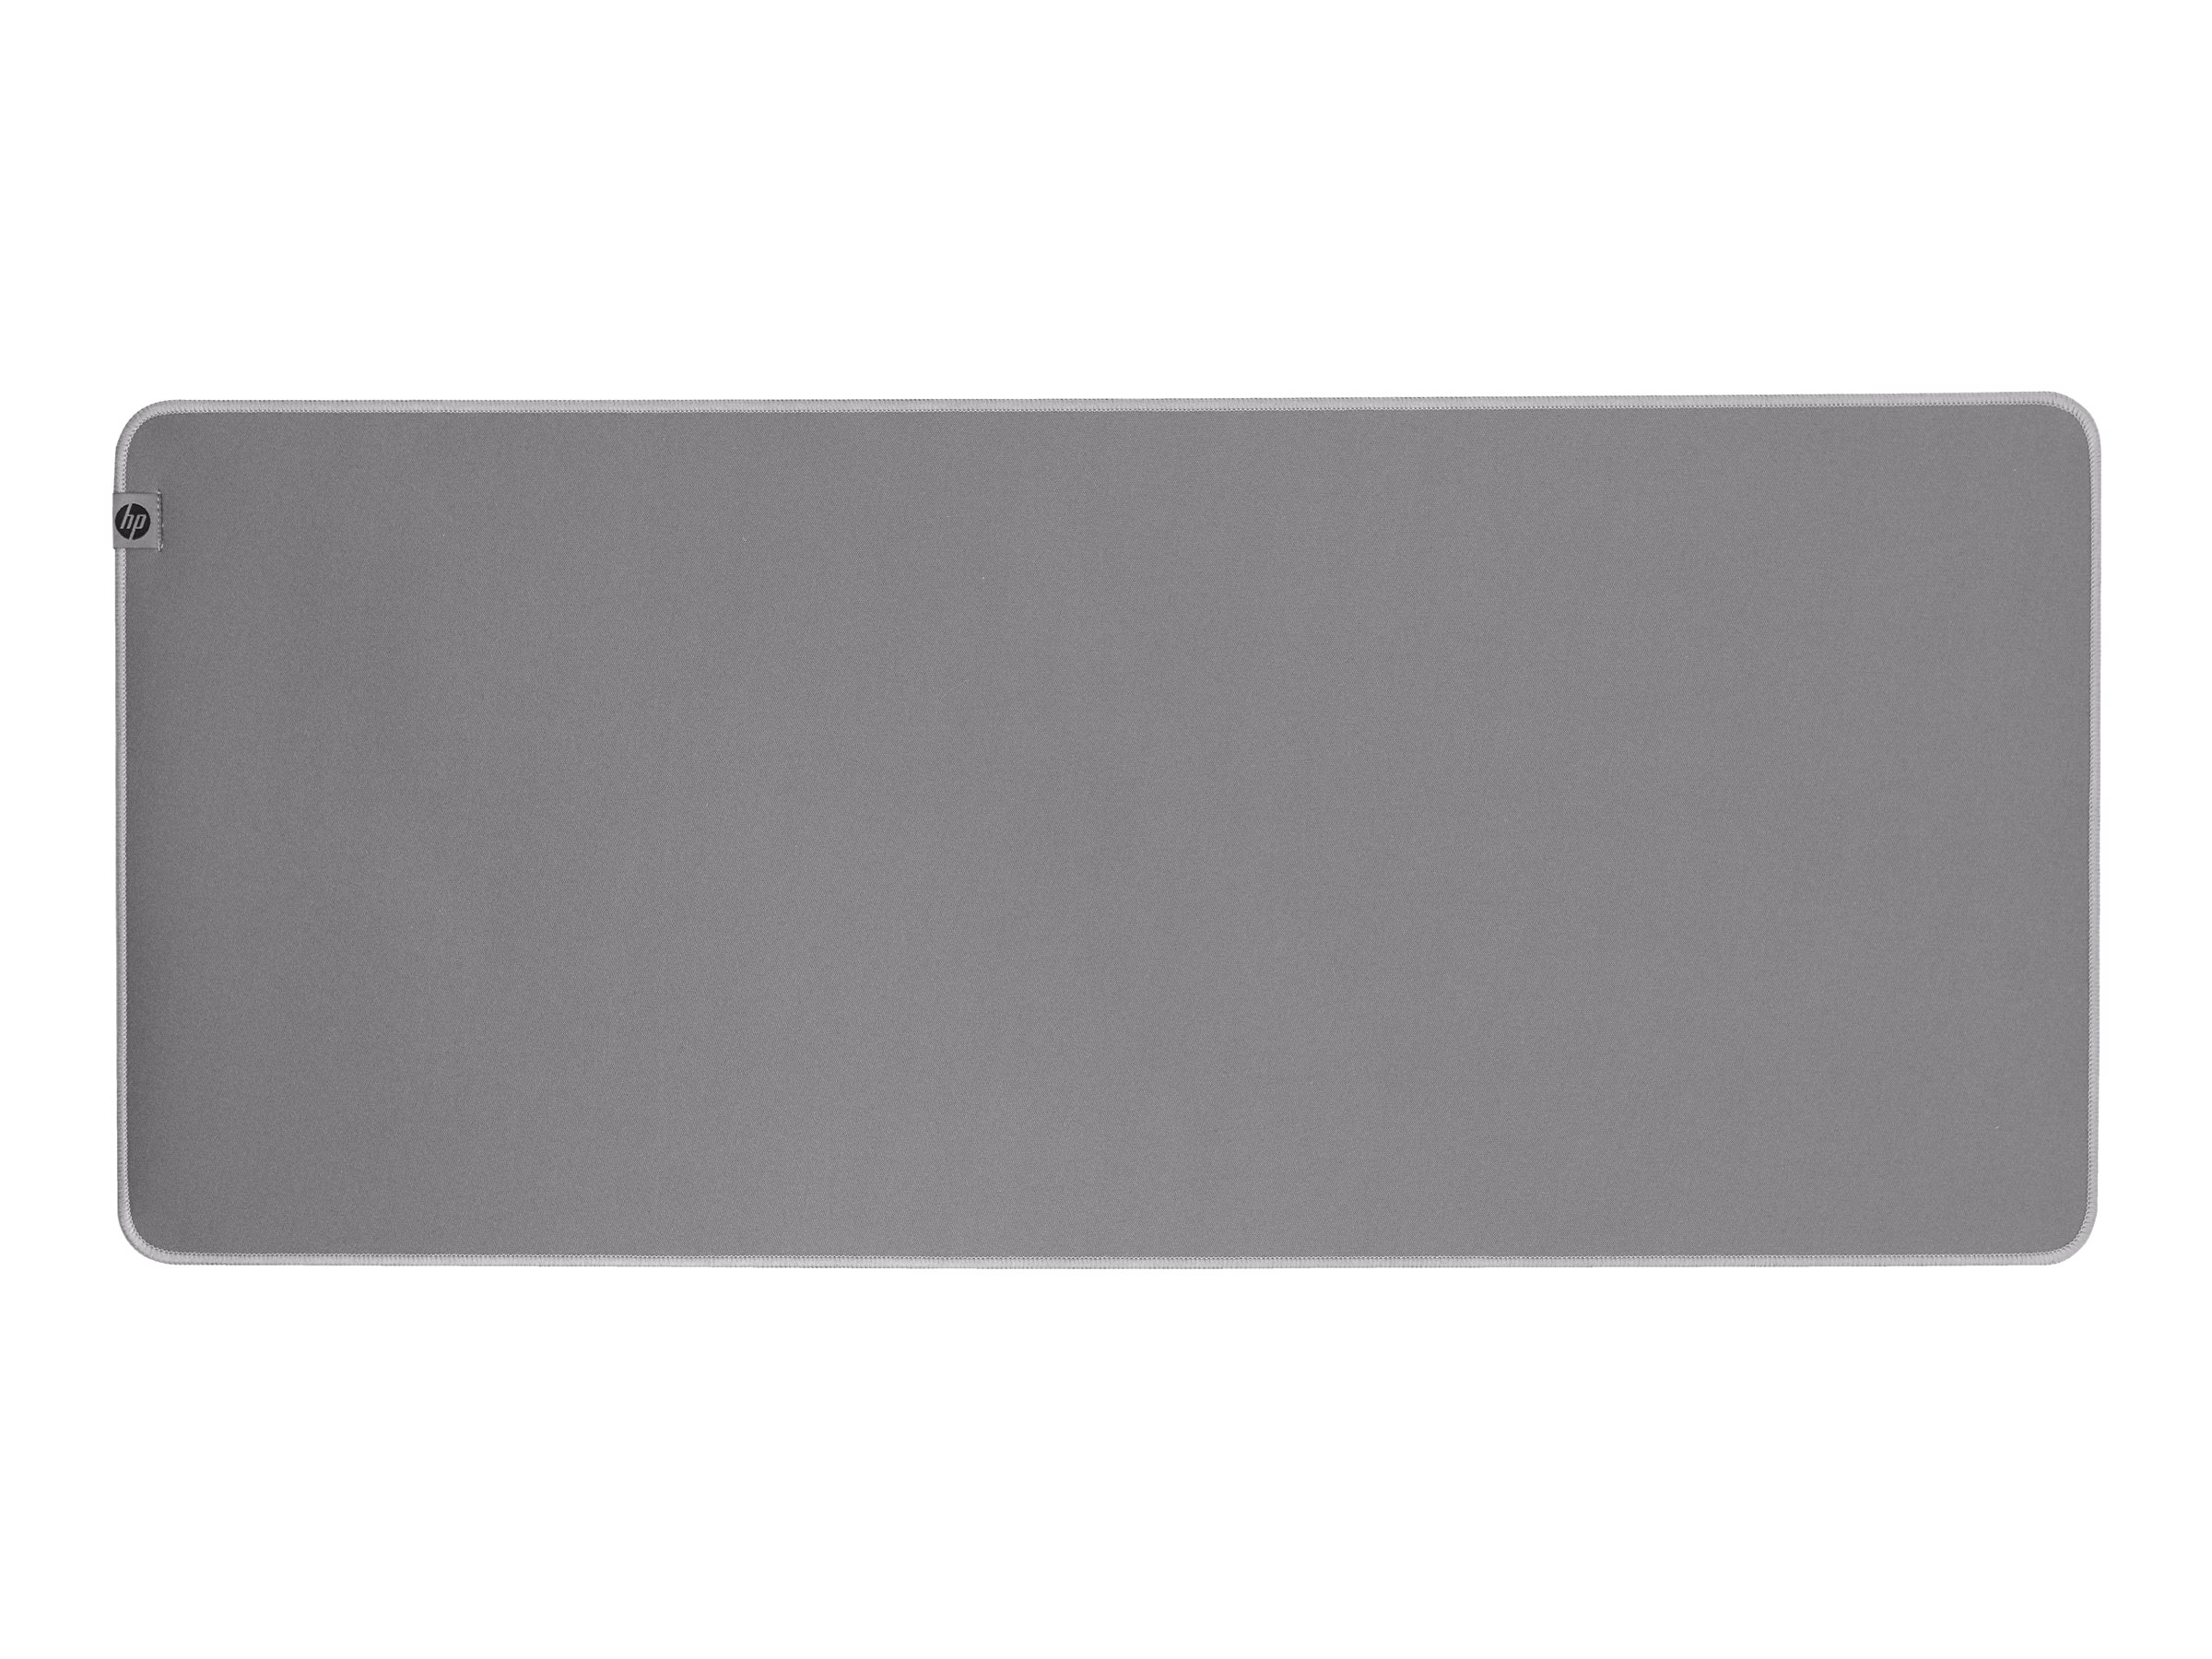 HP 205 - Tapis de souris - désinfectable - gris - 8X597AA - Accessoires pour clavier et souris